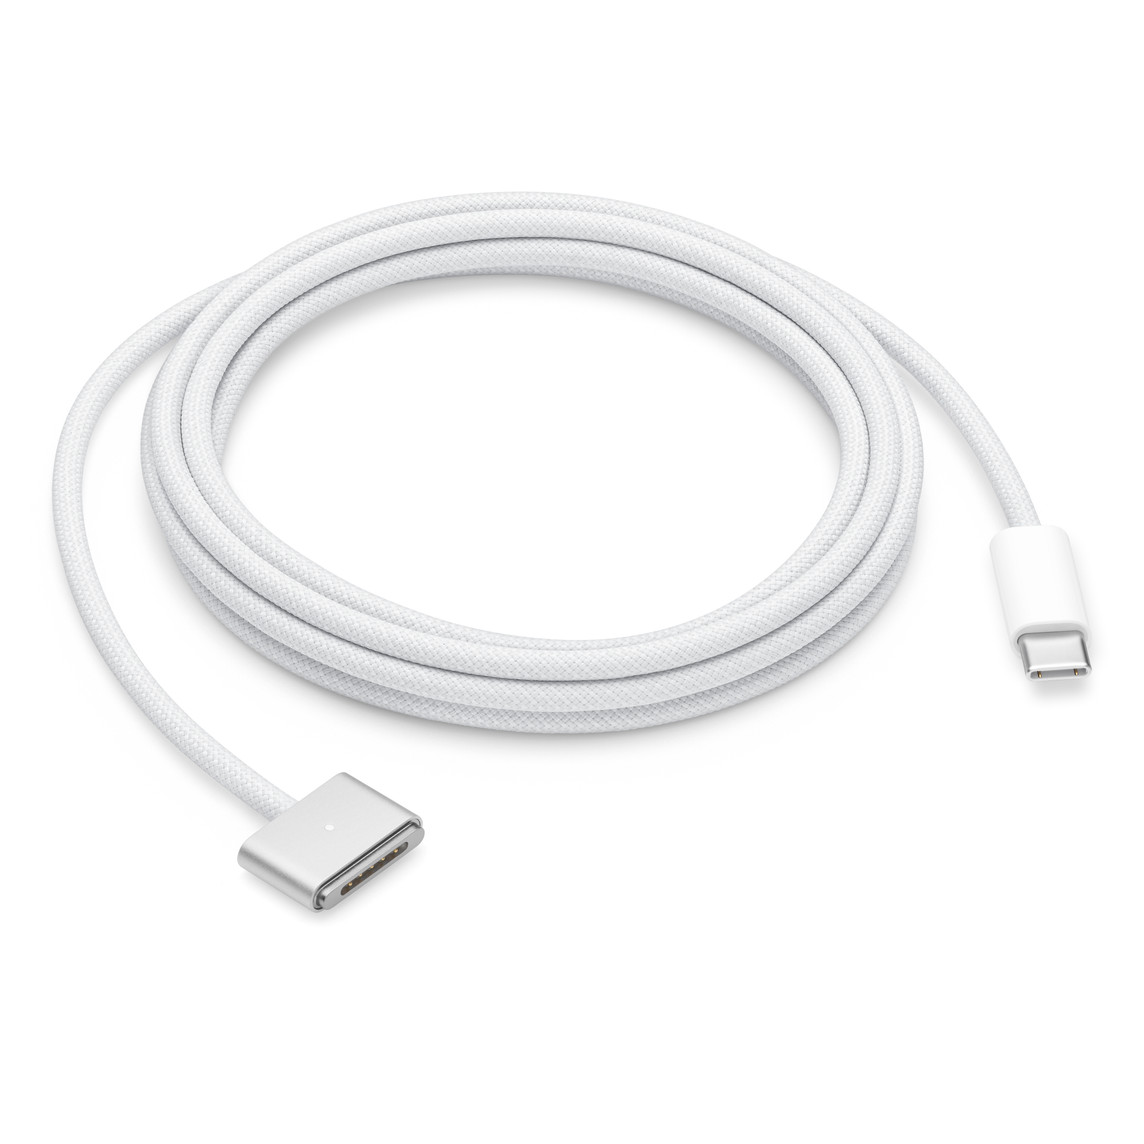 Cable de USB-C a MagSafe 3 (2 metros) en blanco que se acopla de forma magnética al puerto de carga de tu portátil Mac.